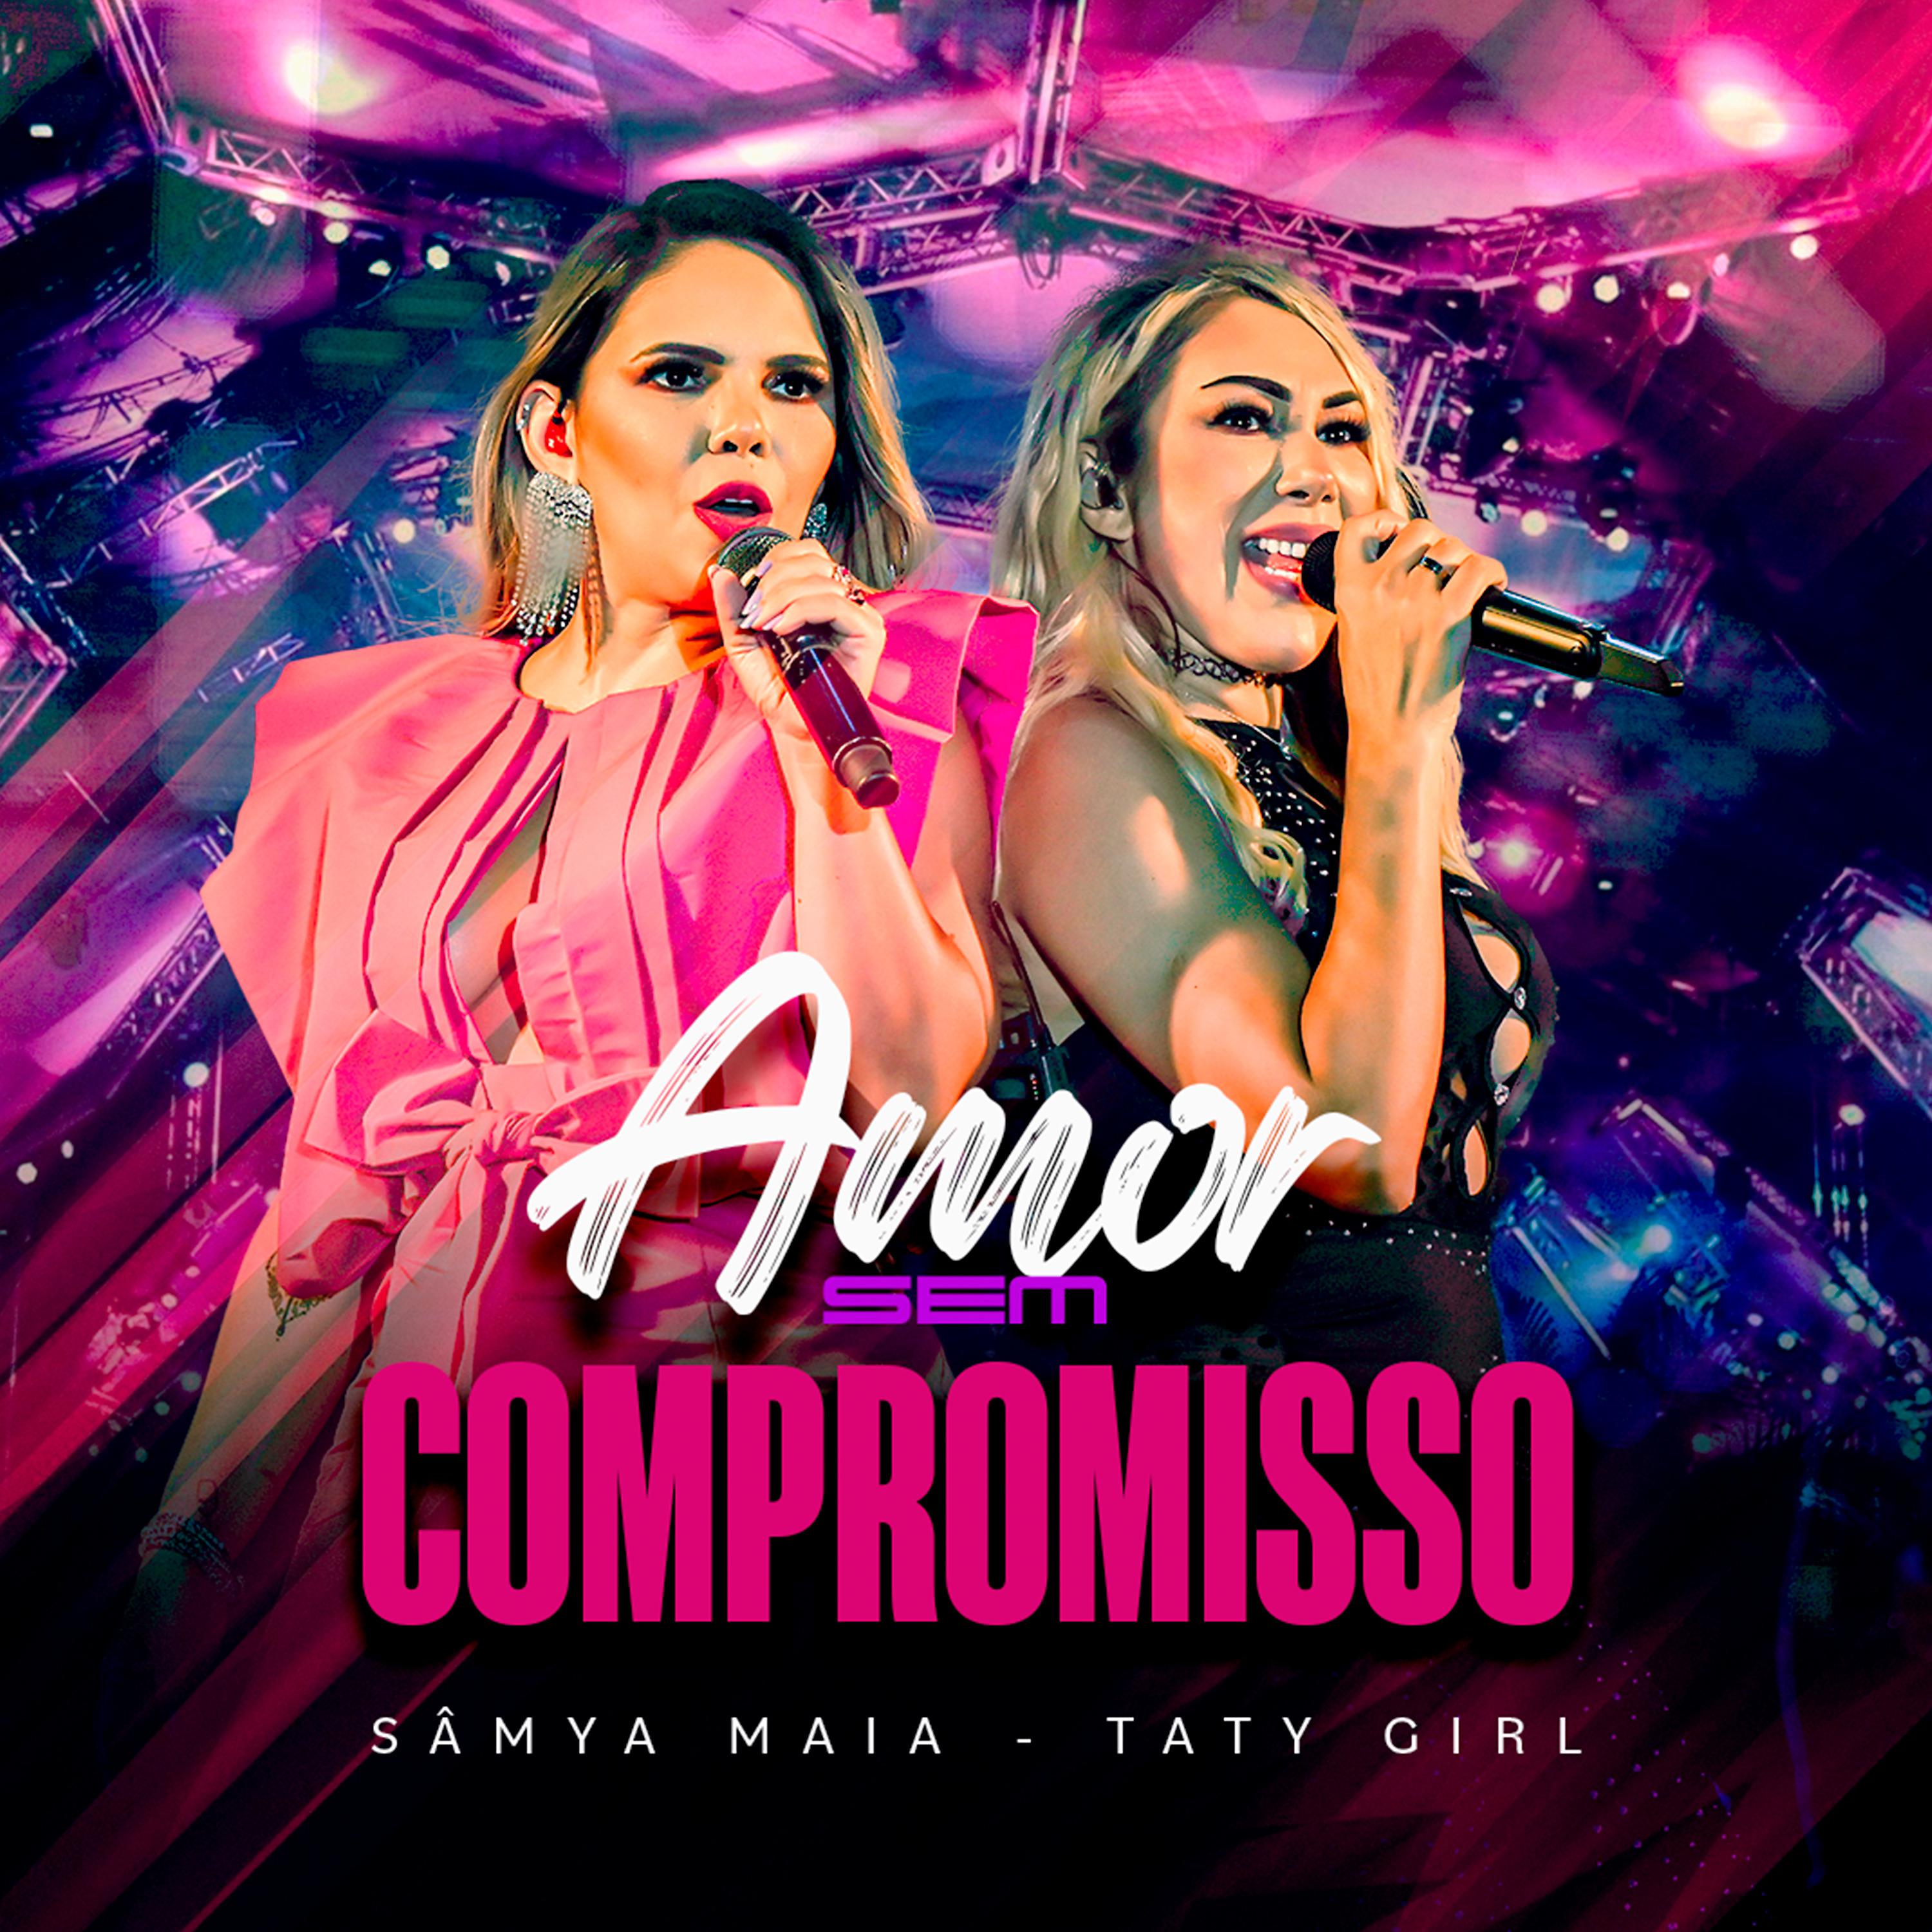 Постер альбома Amor Sem Compromisso